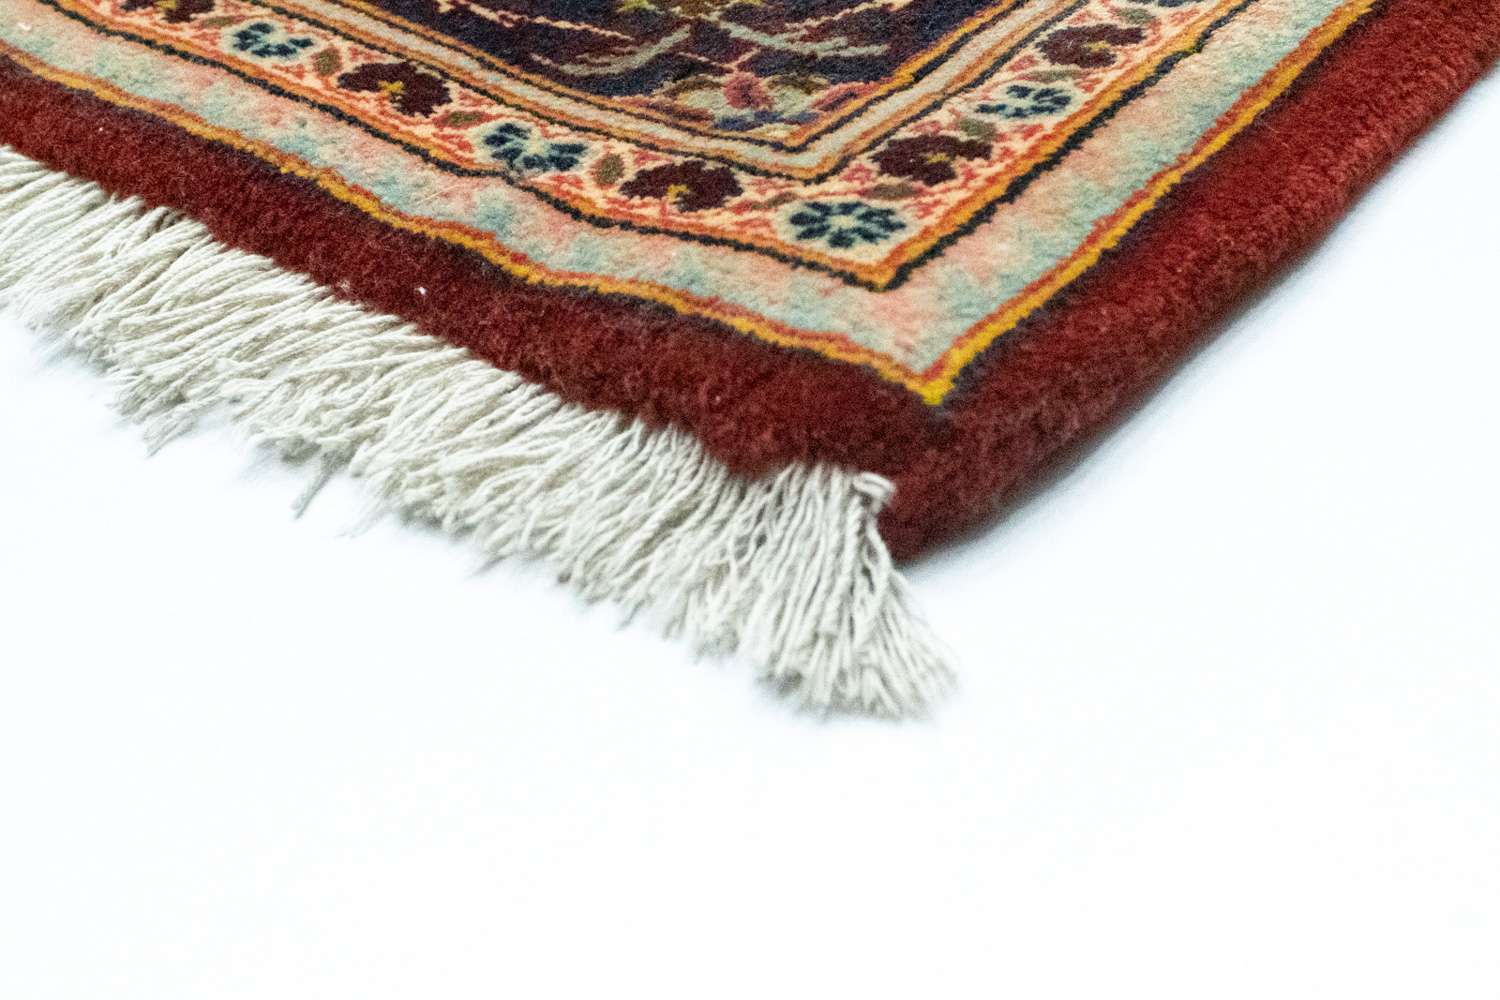 Perský koberec - Keshan - 218 x 147 cm - červená